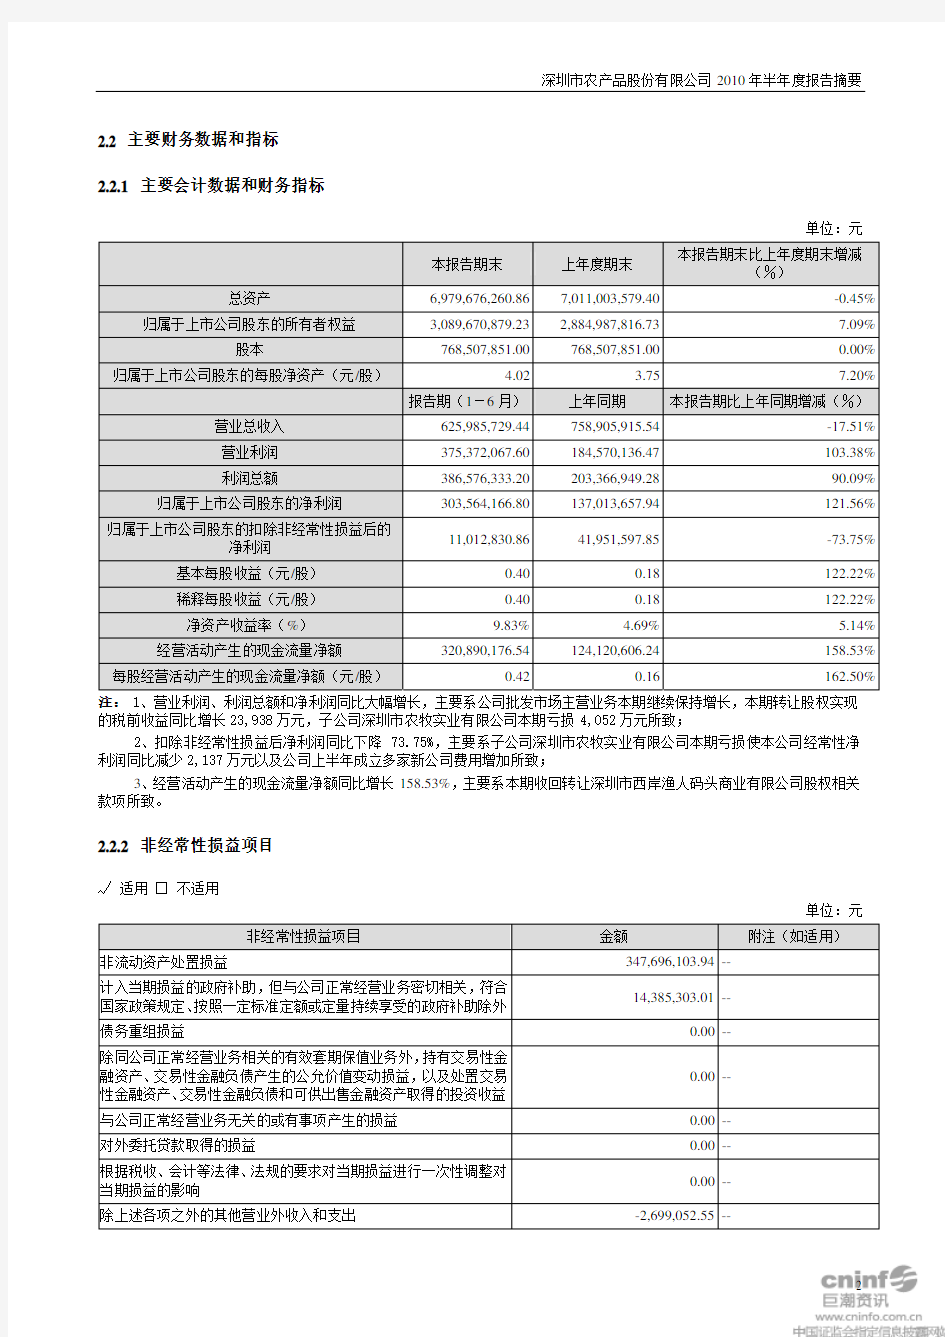 深圳市农产品股份有限公司2010年半年度报告摘要